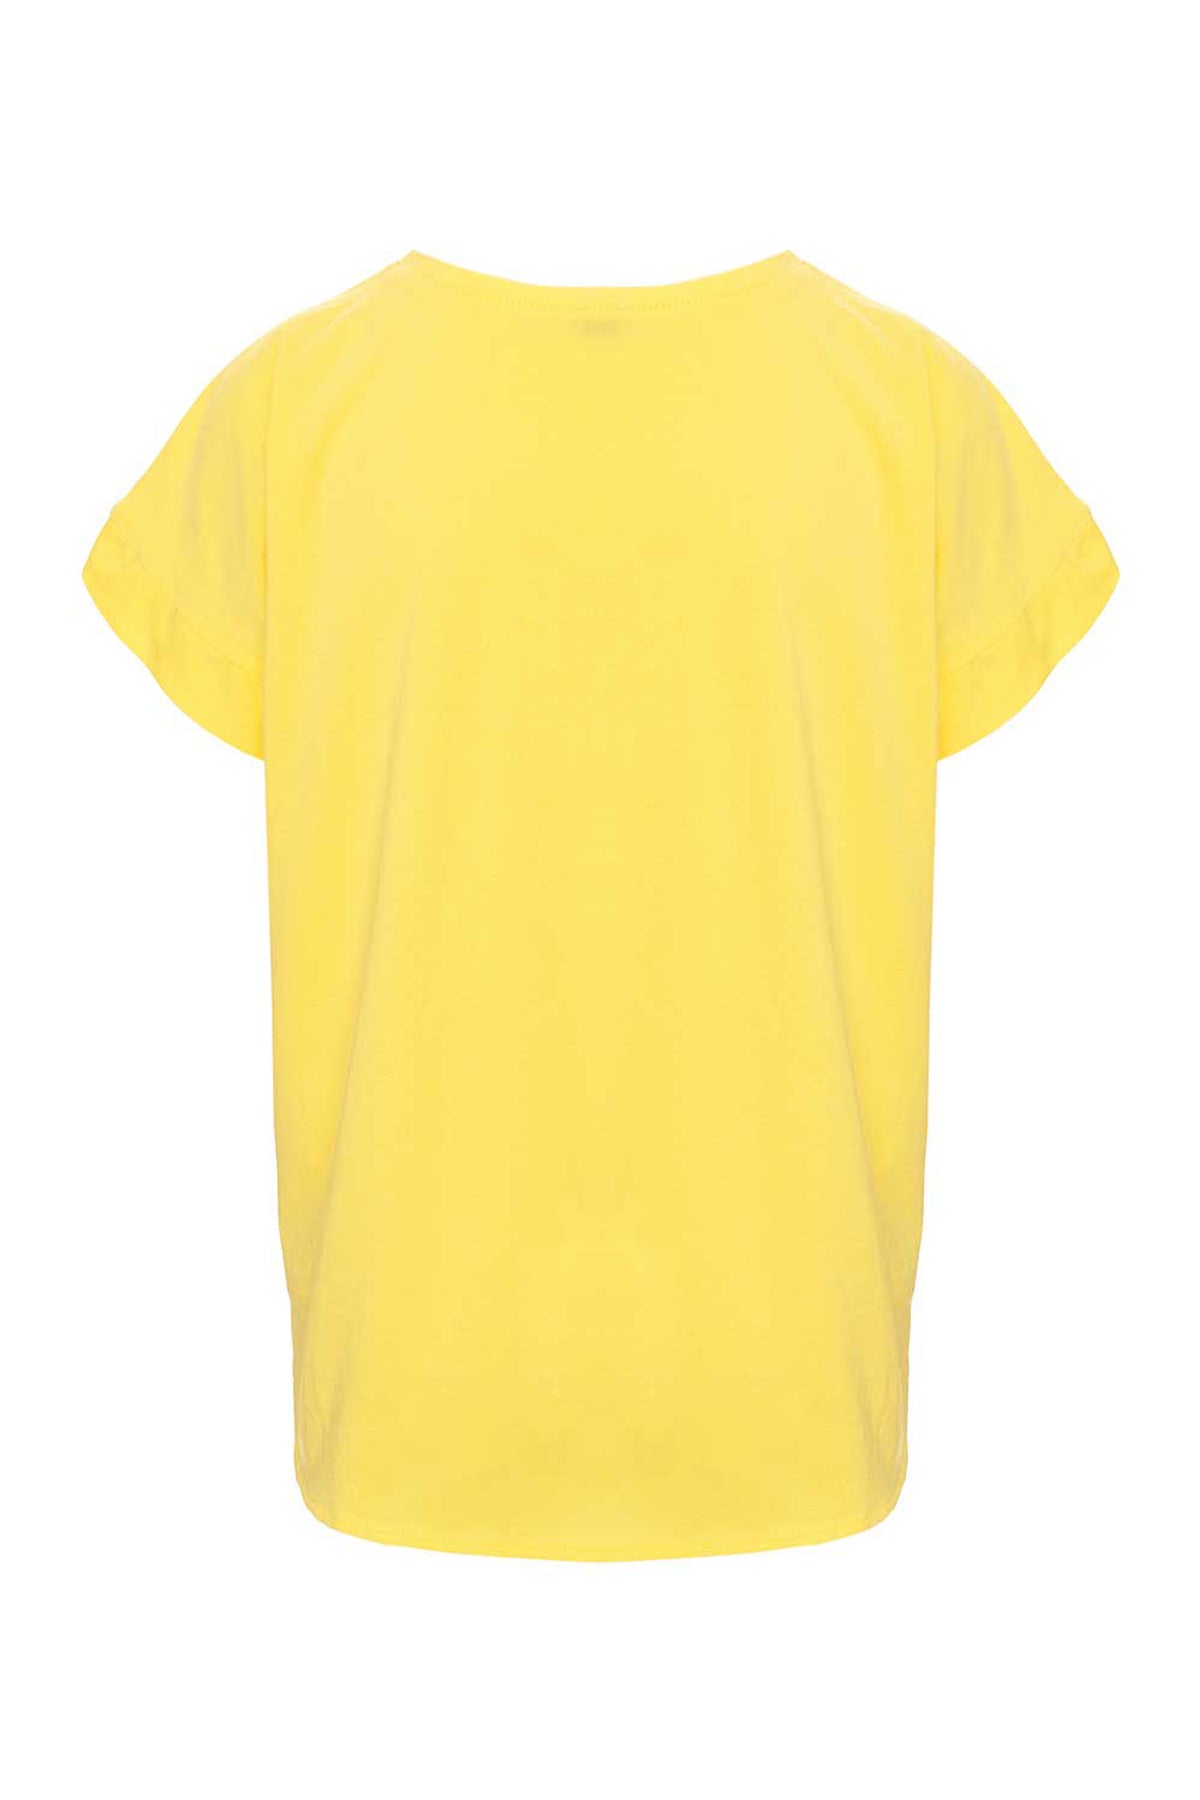 Tricou galben funda supradimensionată pictată manual